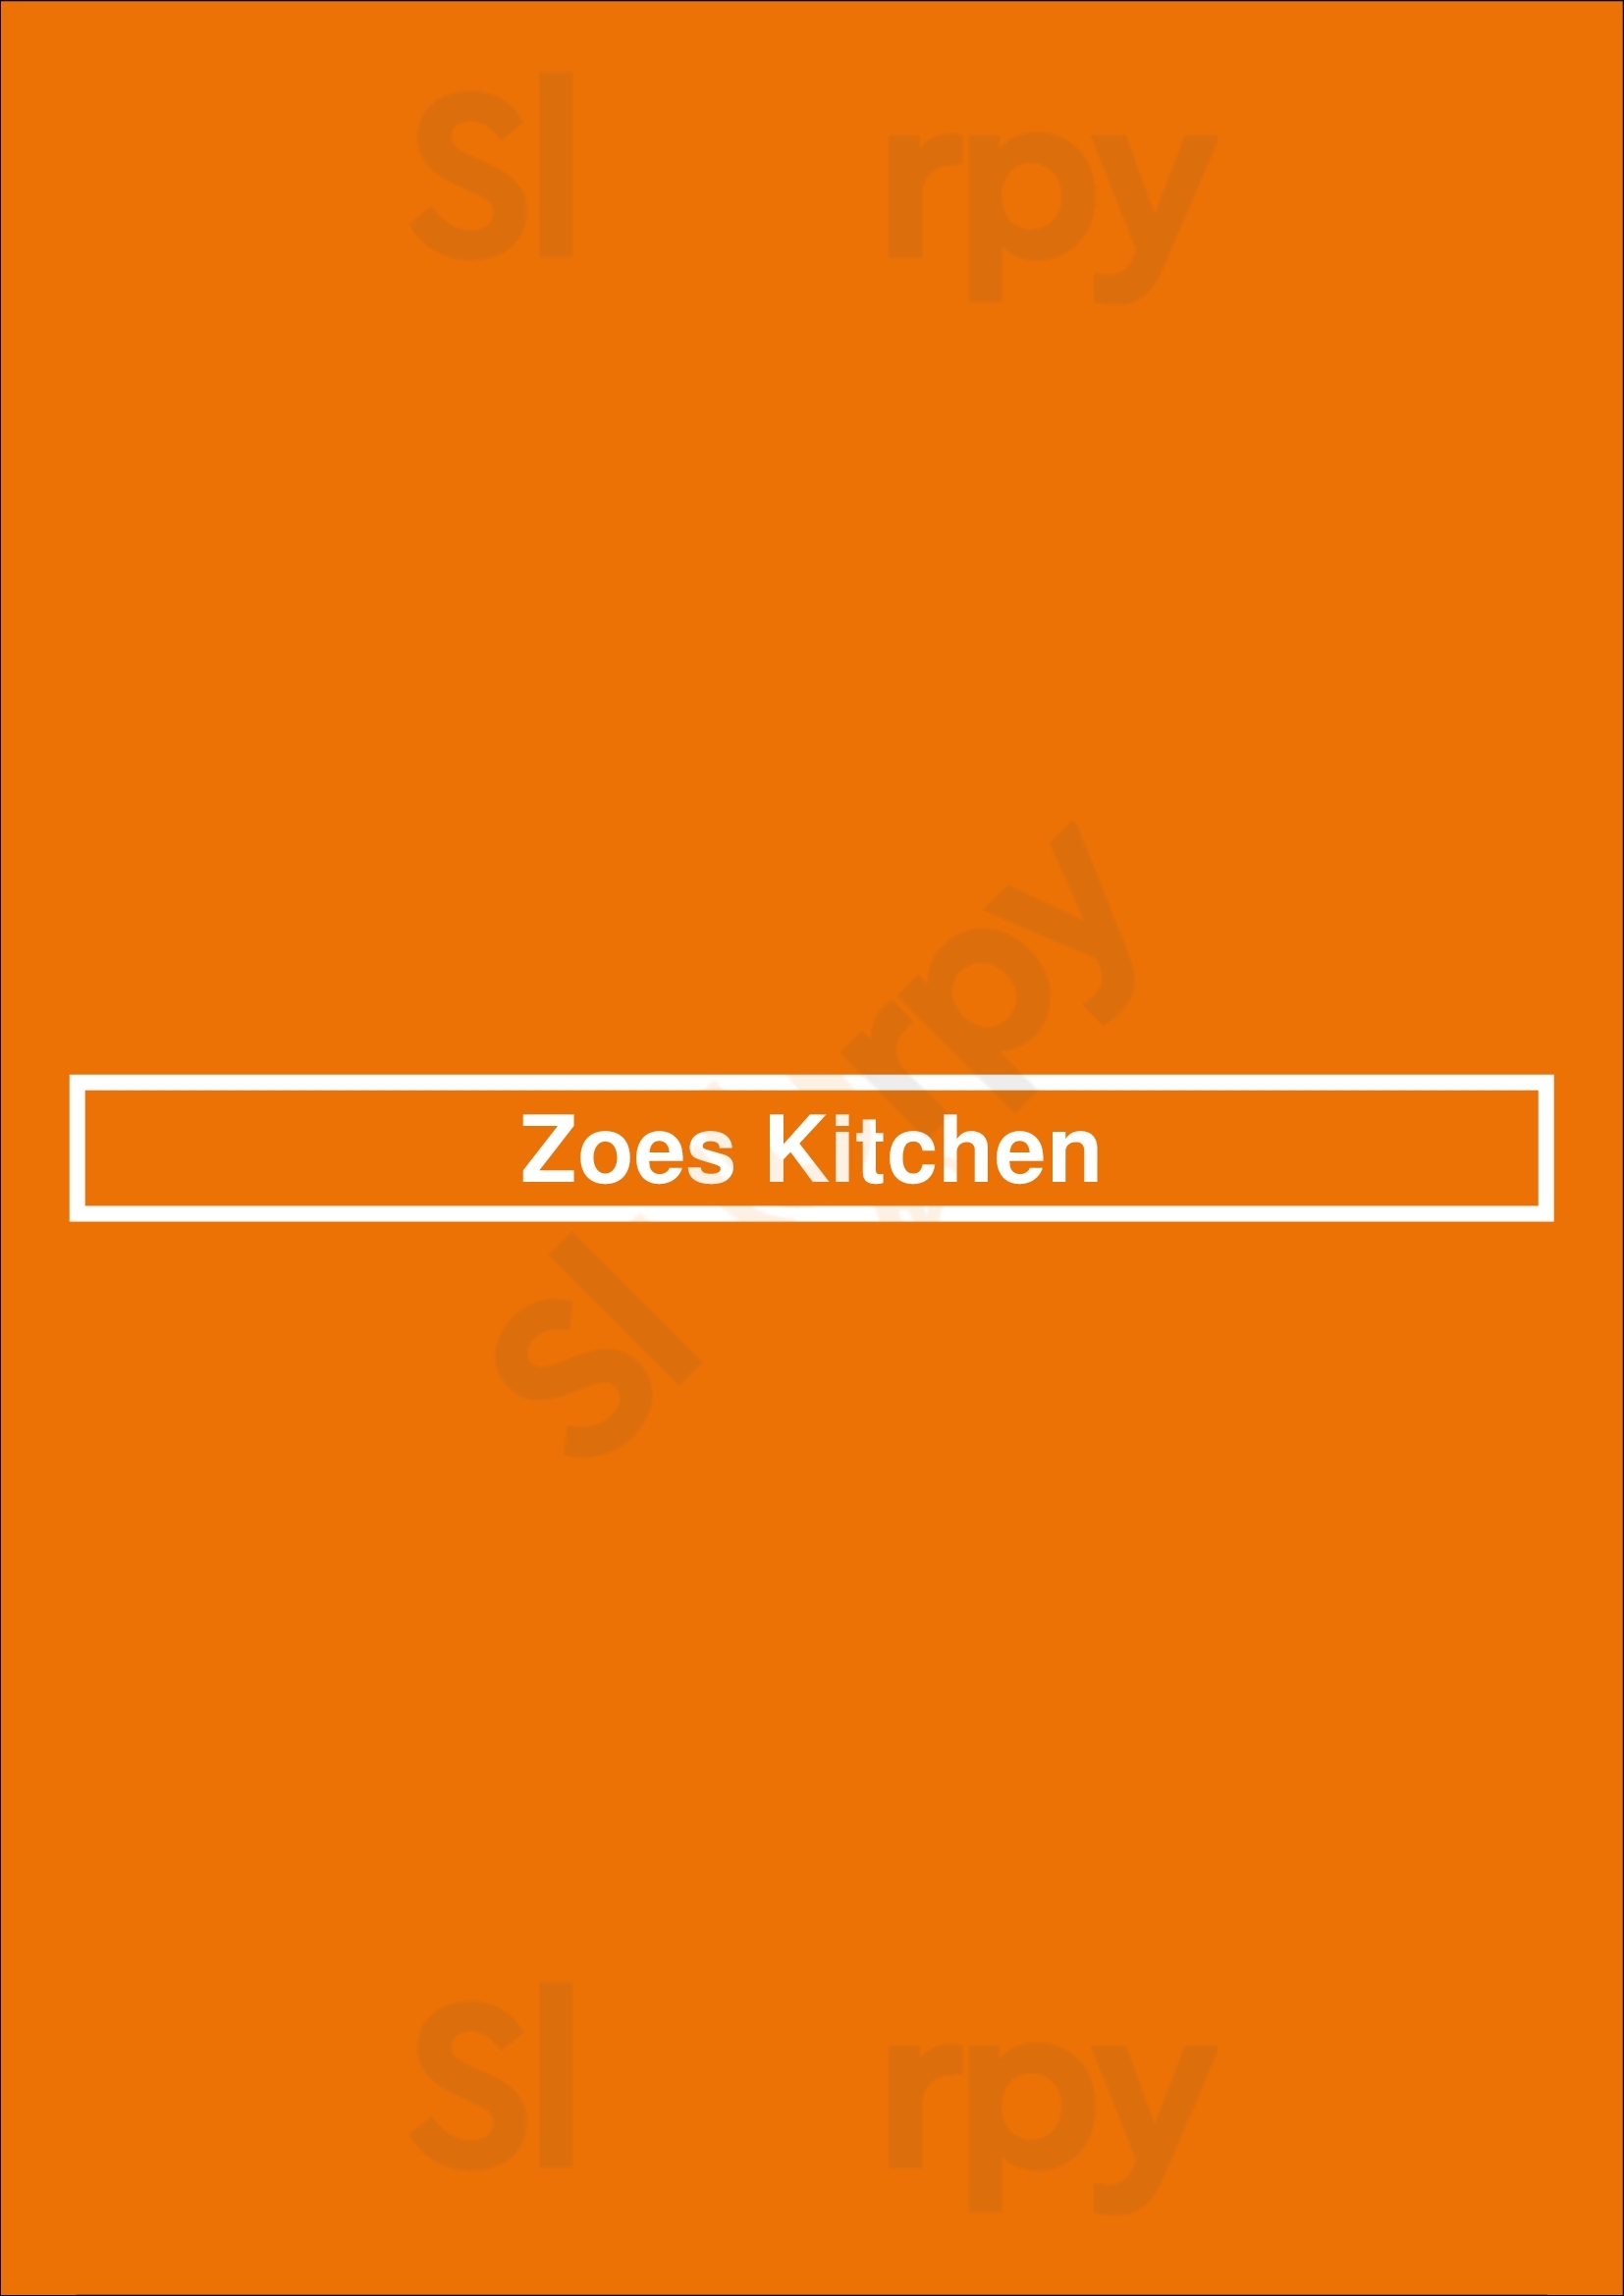 Zoes Kitchen Nashville Menu - 1